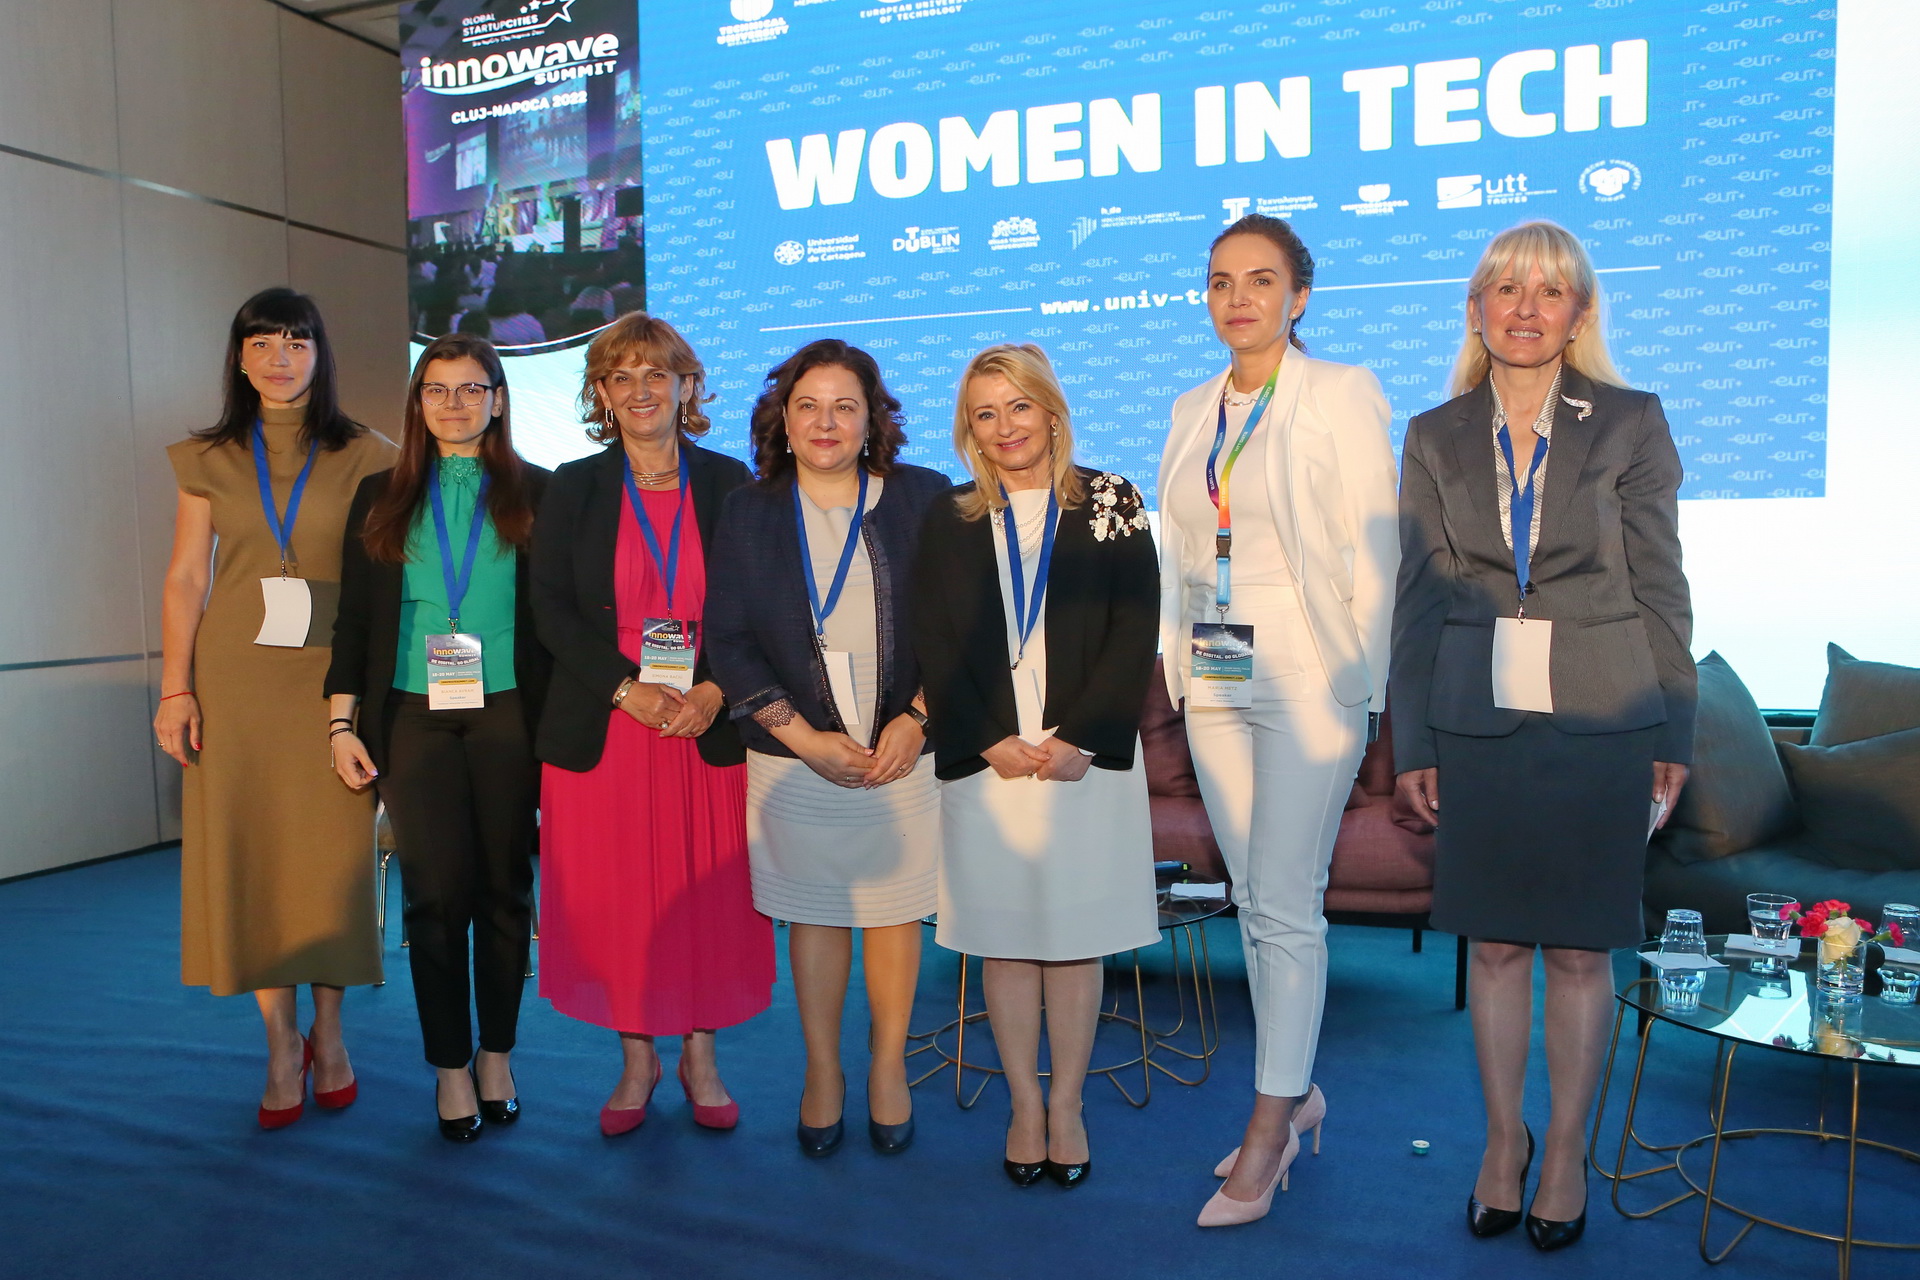 inițiativa ”women in tech”a fost  lansată în cadrul  innowave summit 2022